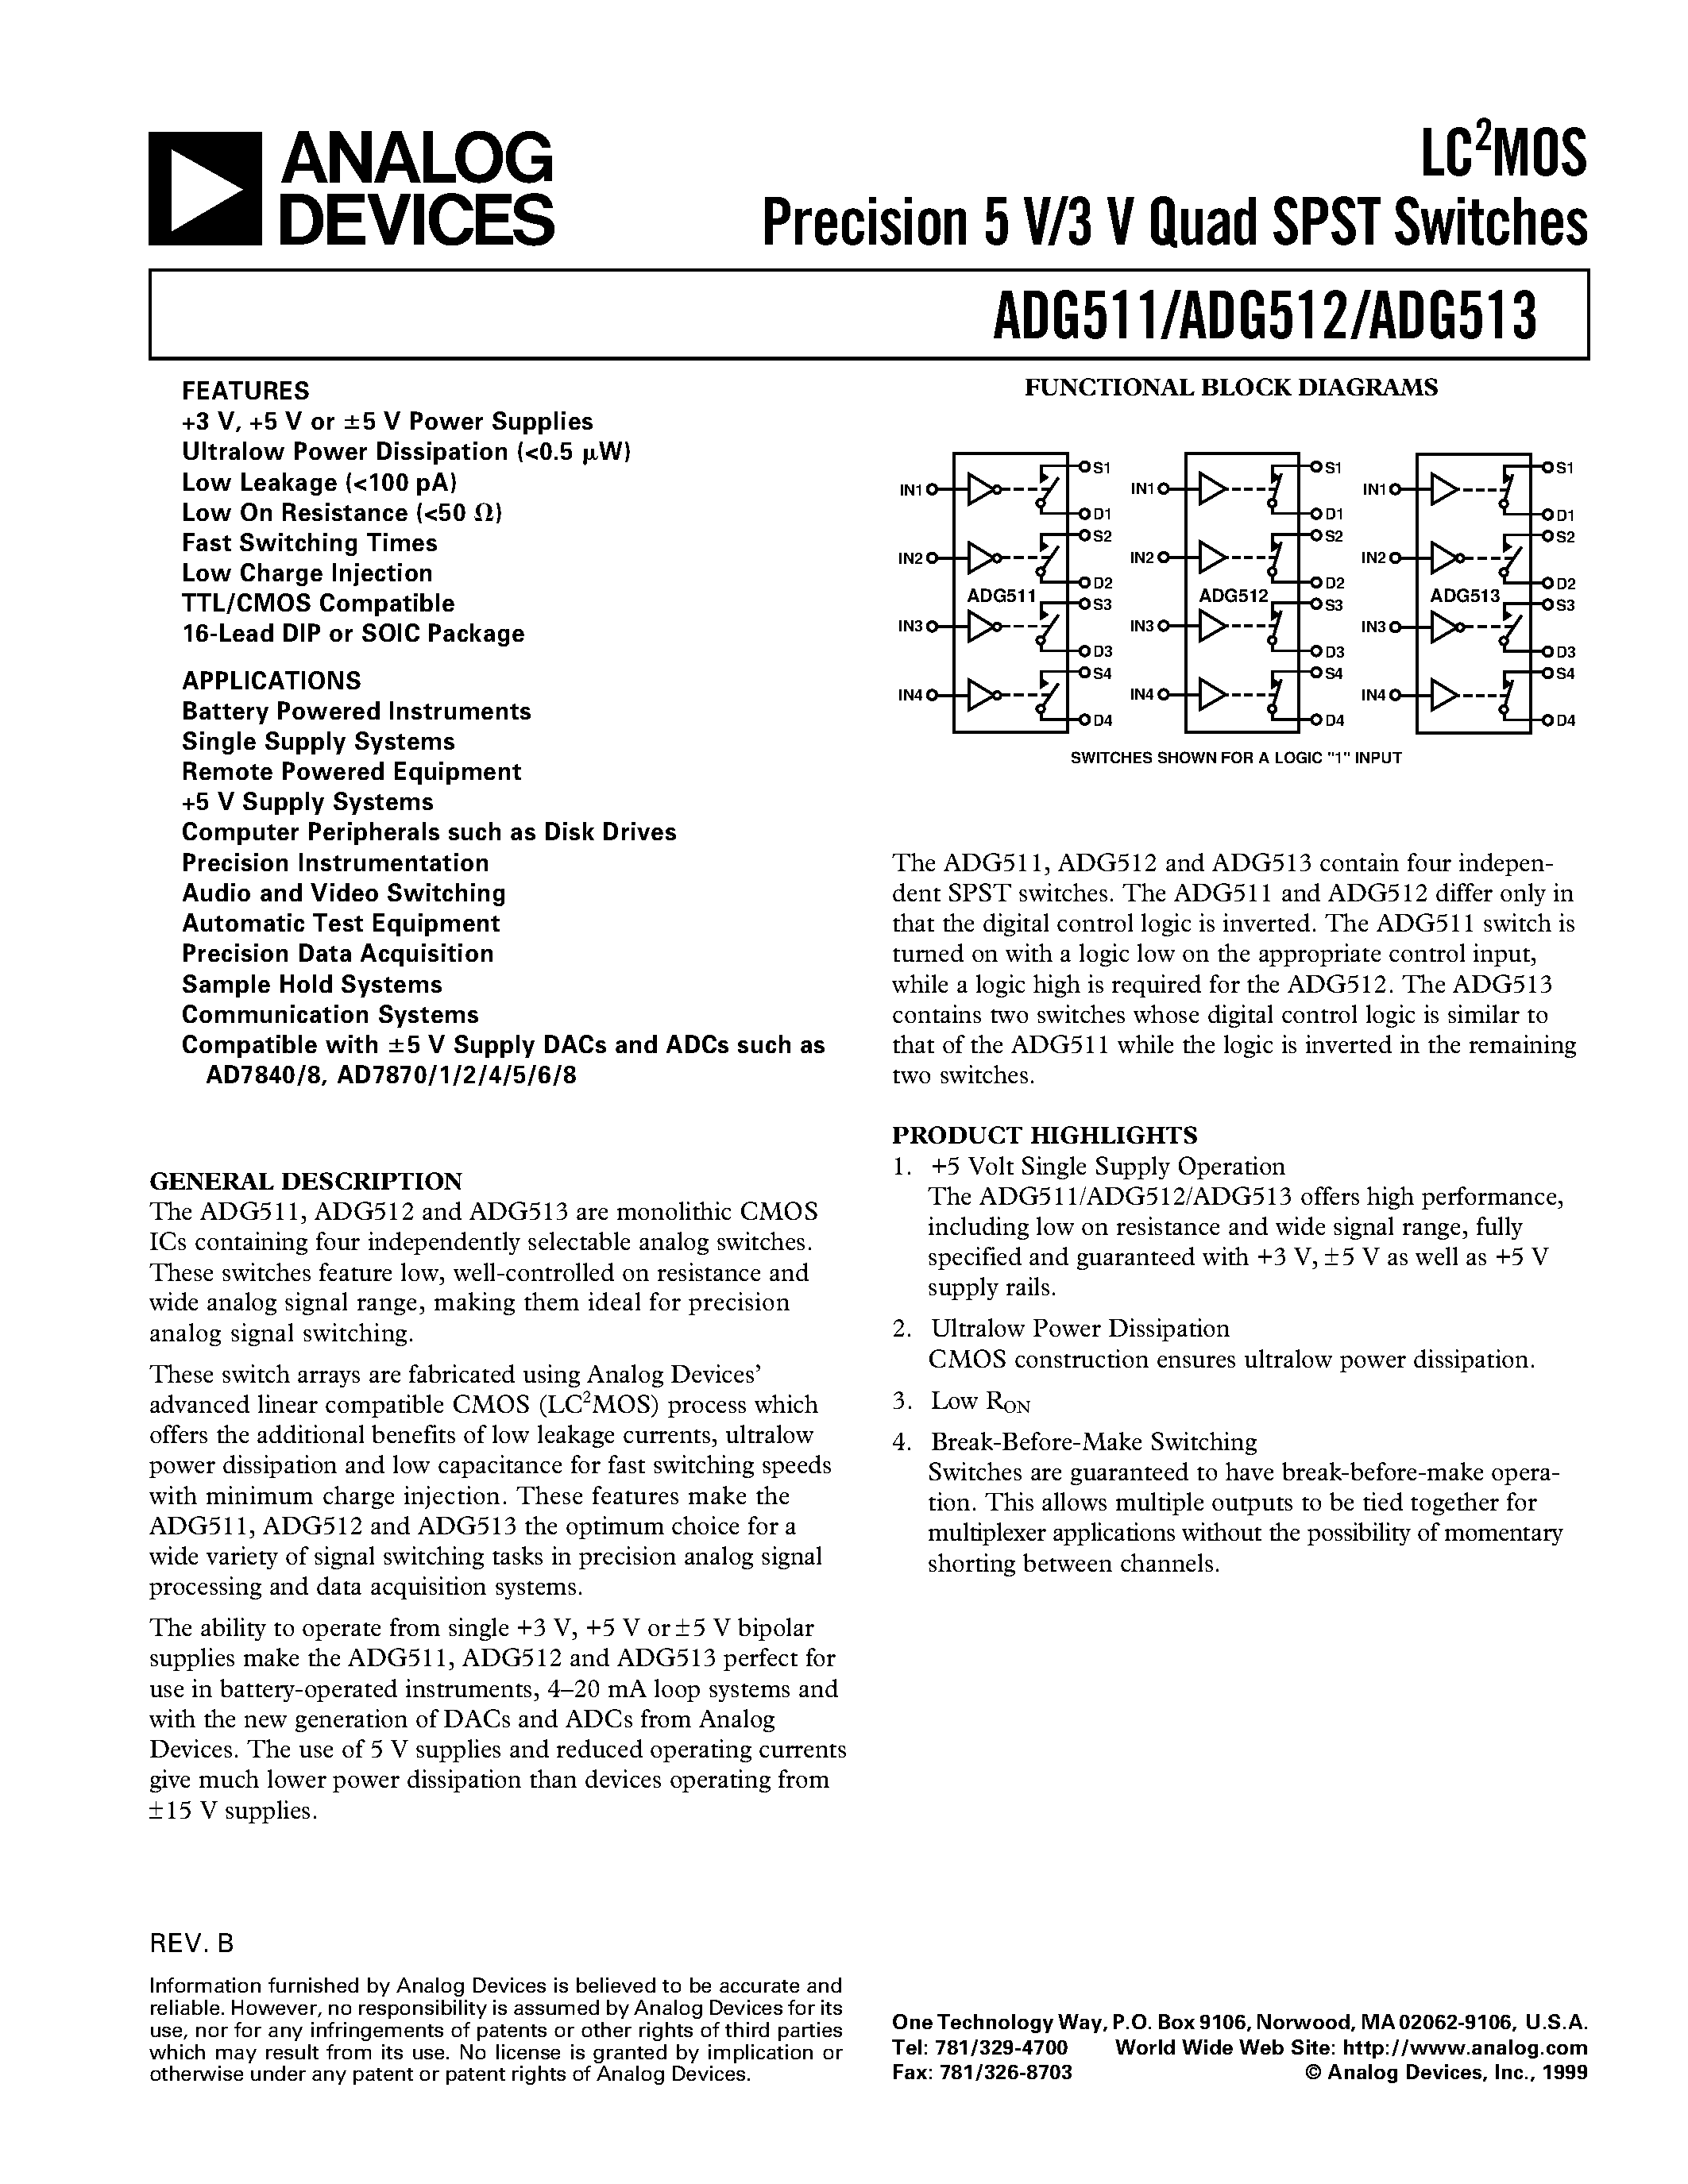 Даташит ADG513BR - LC2MOS Precision 5 V/3 V Quad SPST Switches страница 1